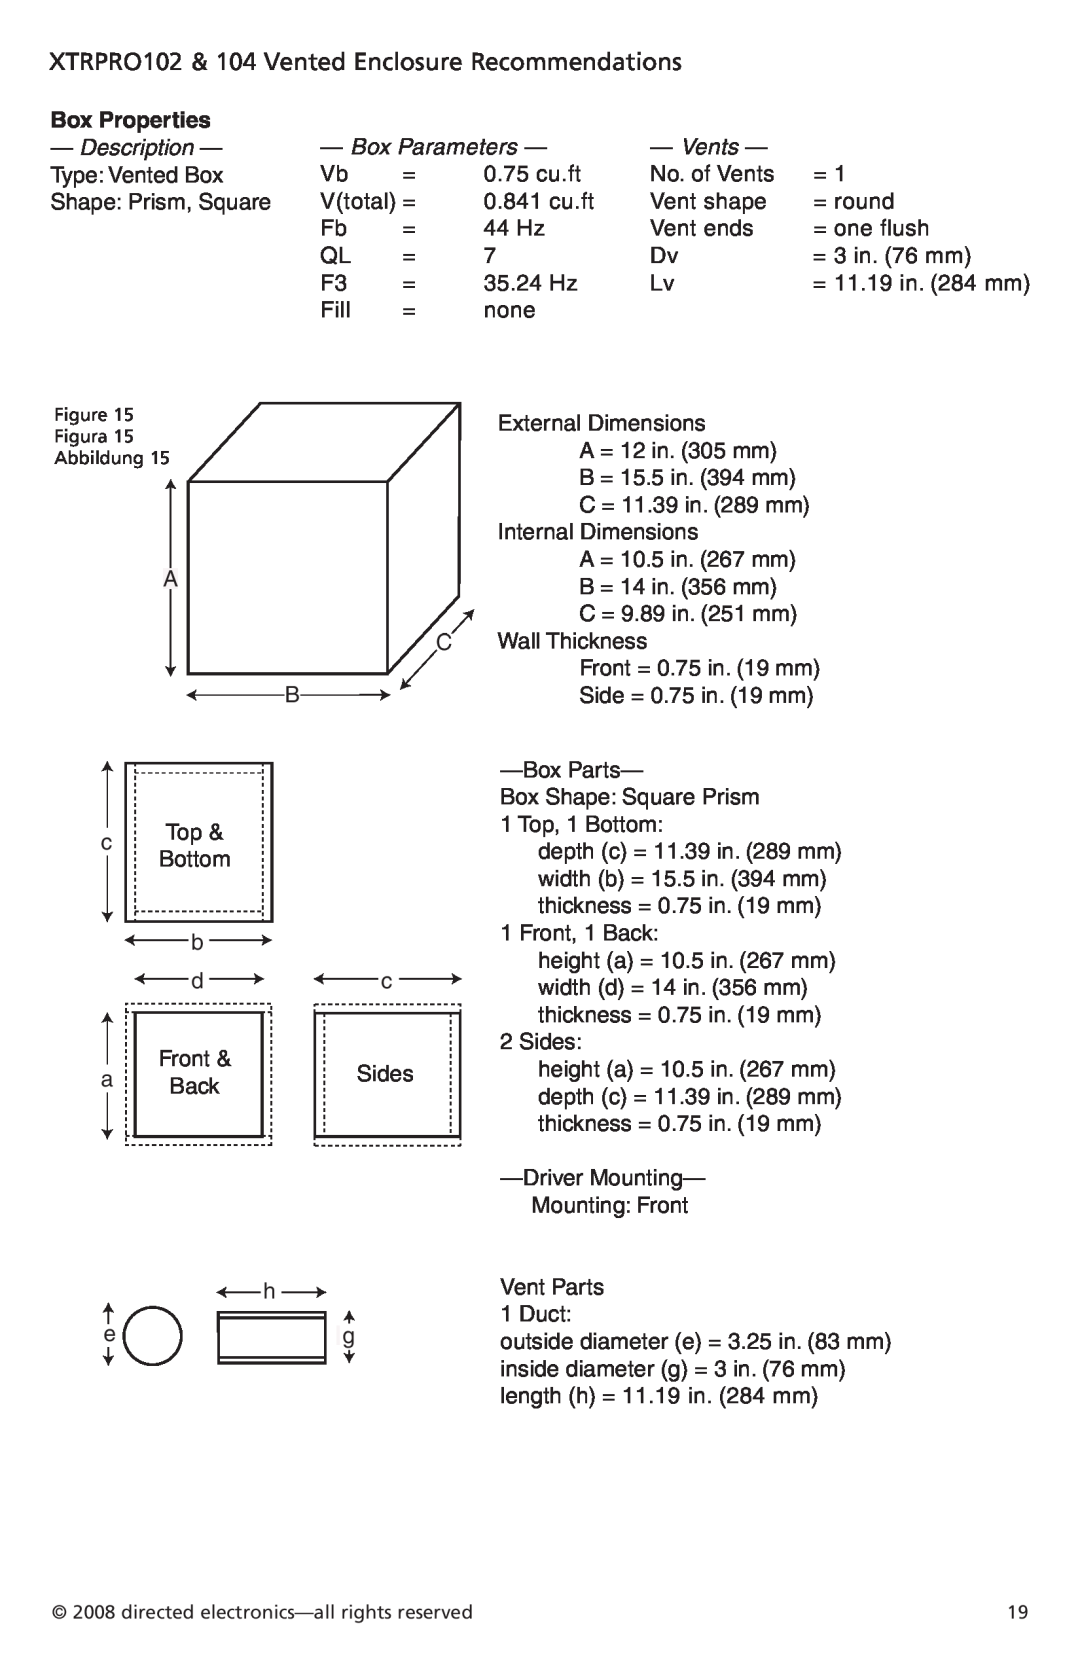 Orion Car Audio XTRPRO124 XTRPRO102 & 104 Vented Enclosure Recommendations, Box Properties, Description, Box Parameters 